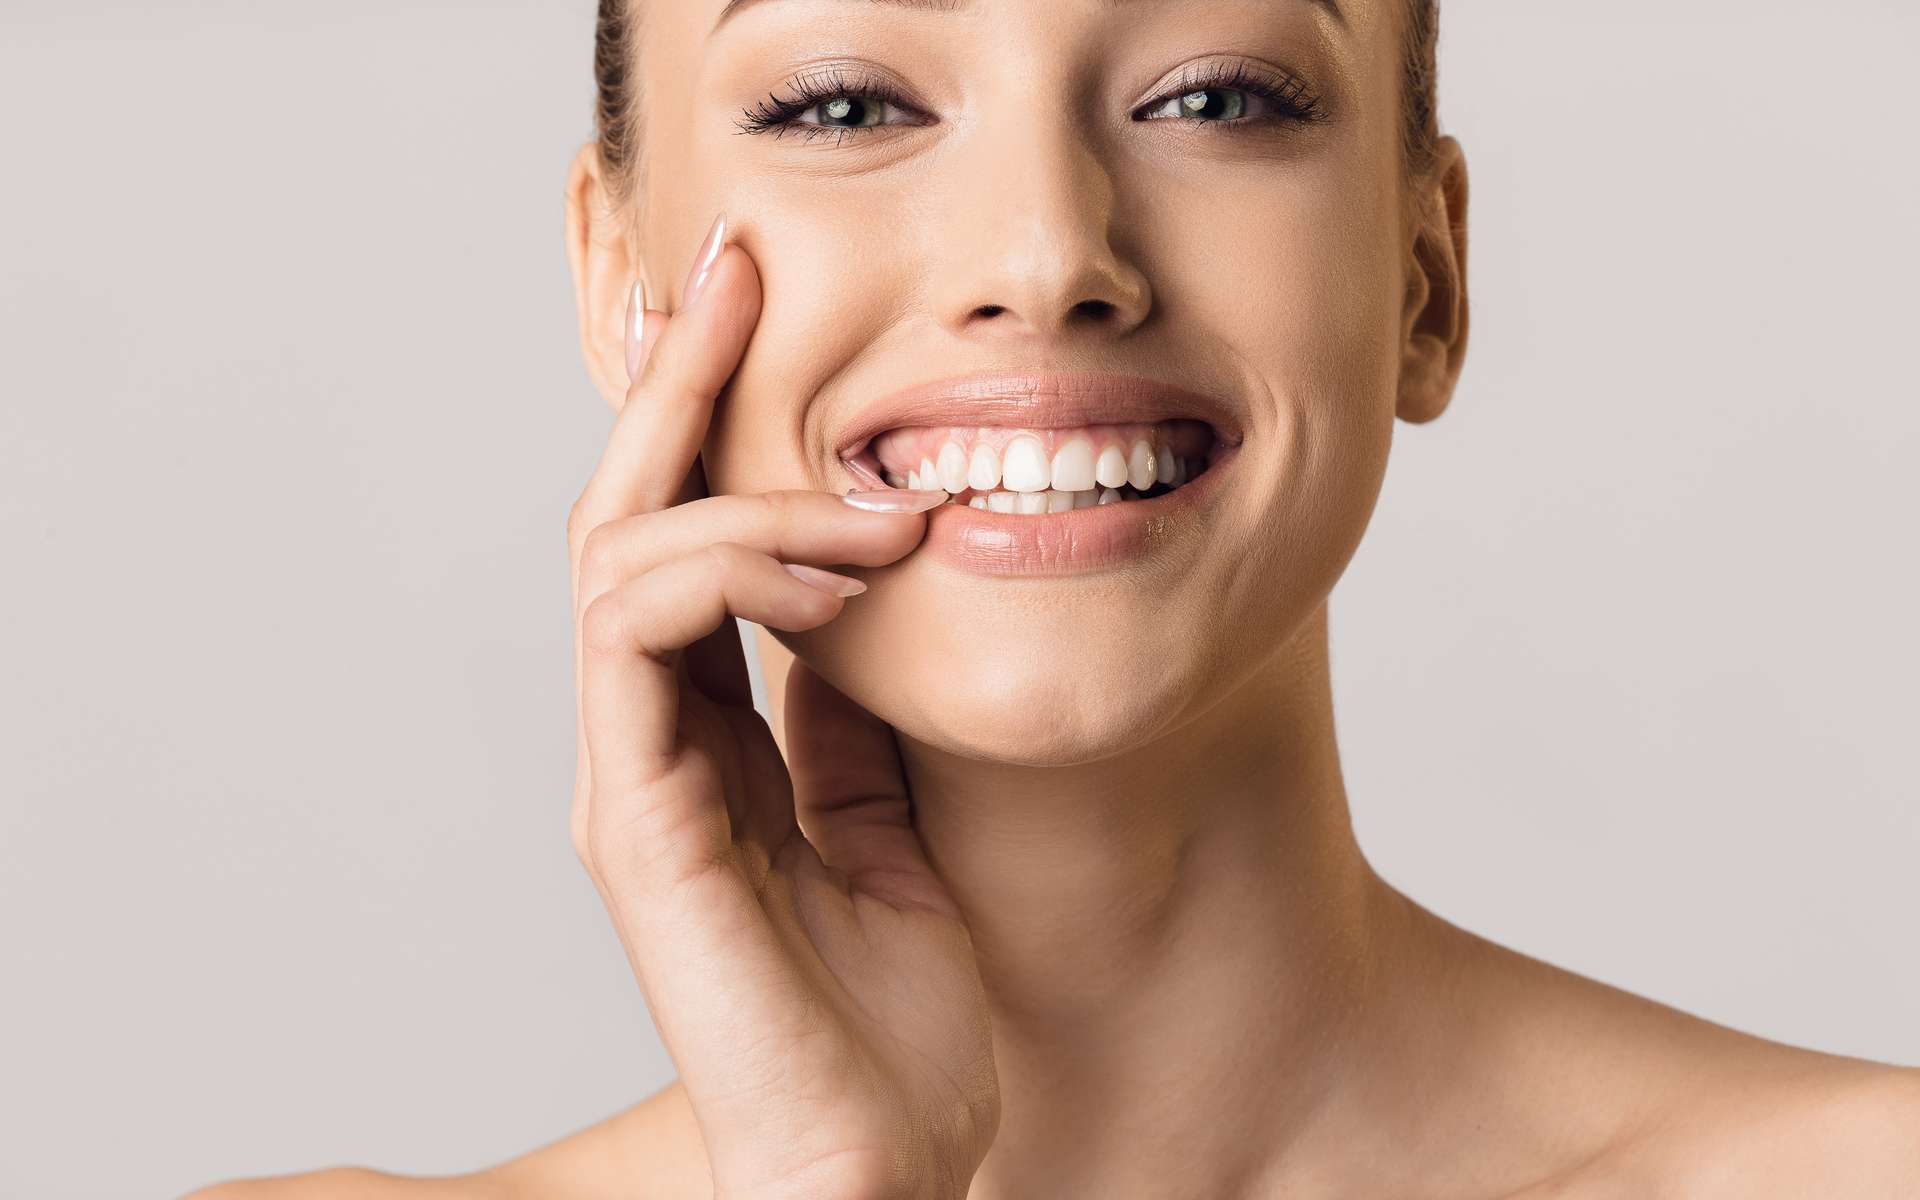 Pour une belle dentition, un brossage des dents 3 fois par jour est recommandé. © Prostock-studio